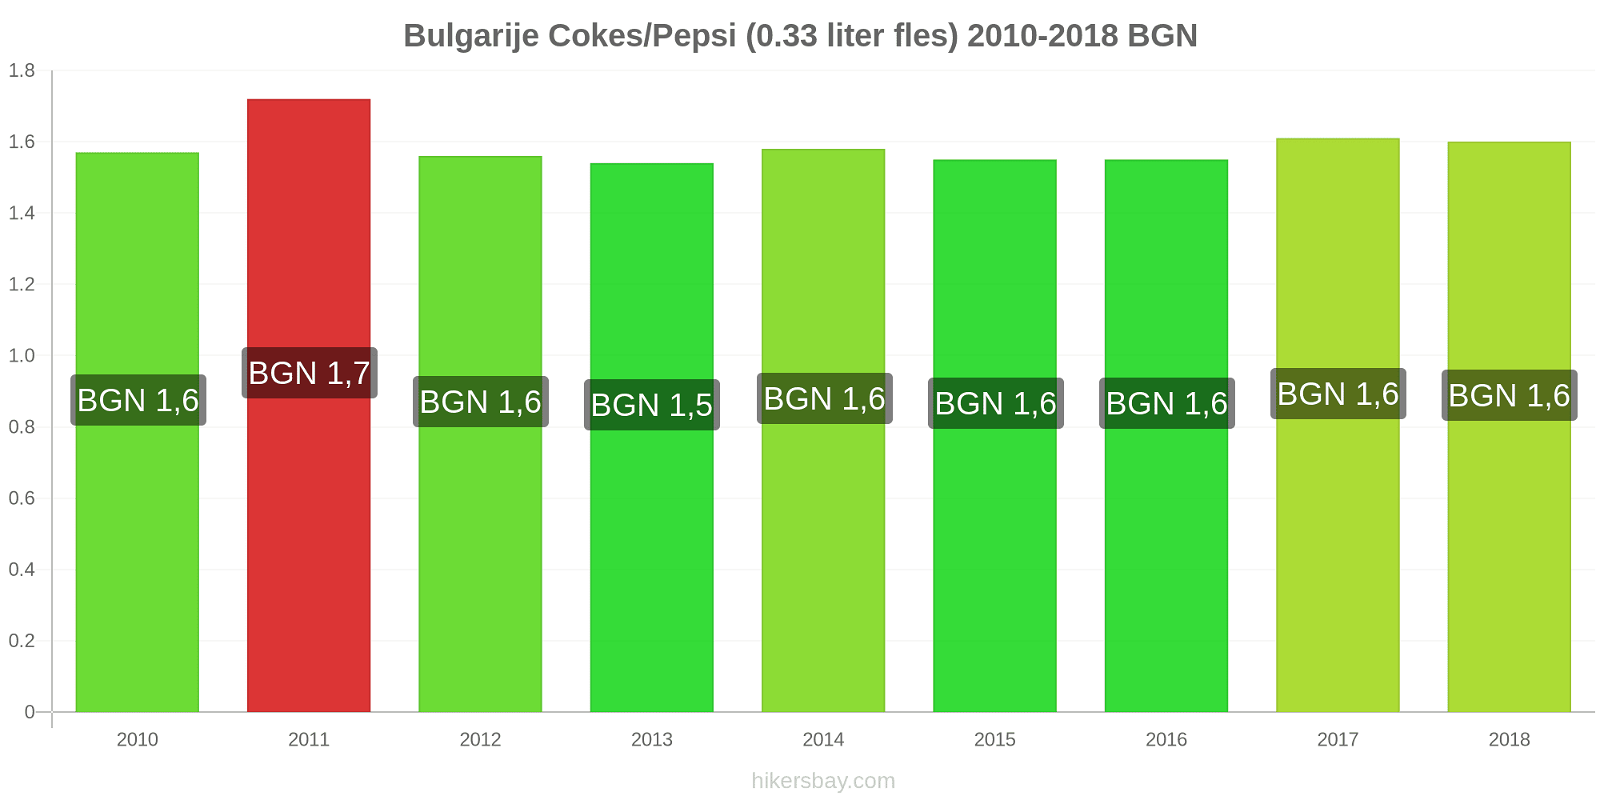 Bulgarije prijswijzigingen Cokes/Pepsi (0,33 literfles) hikersbay.com